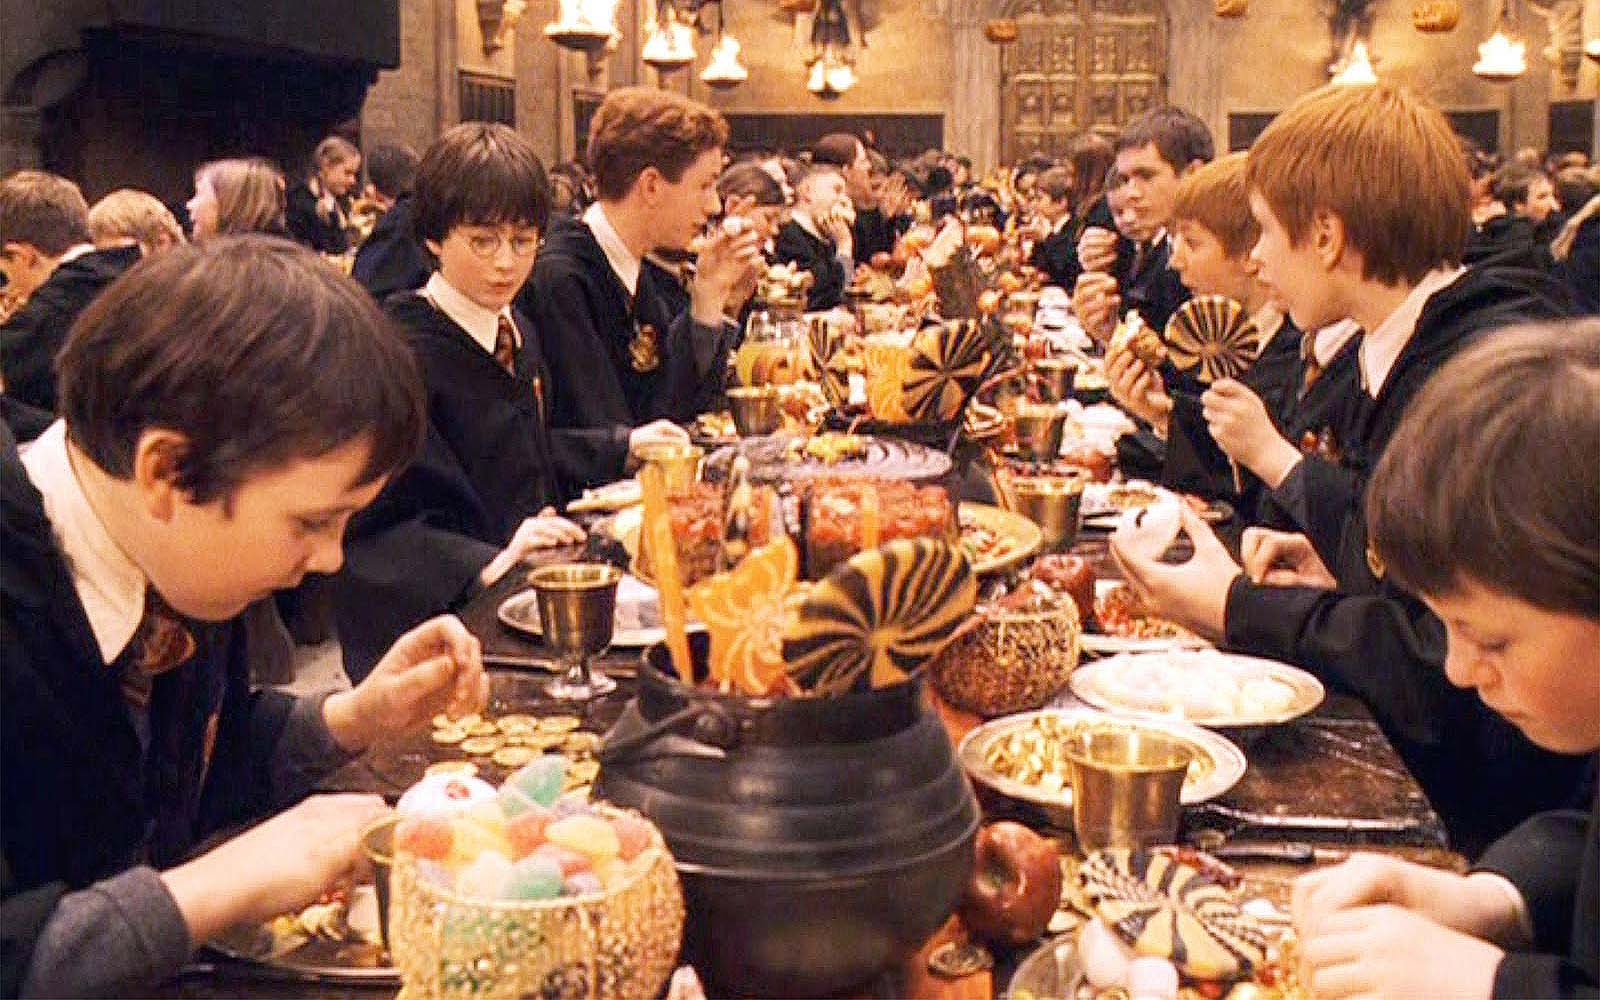 Harry Potter feast